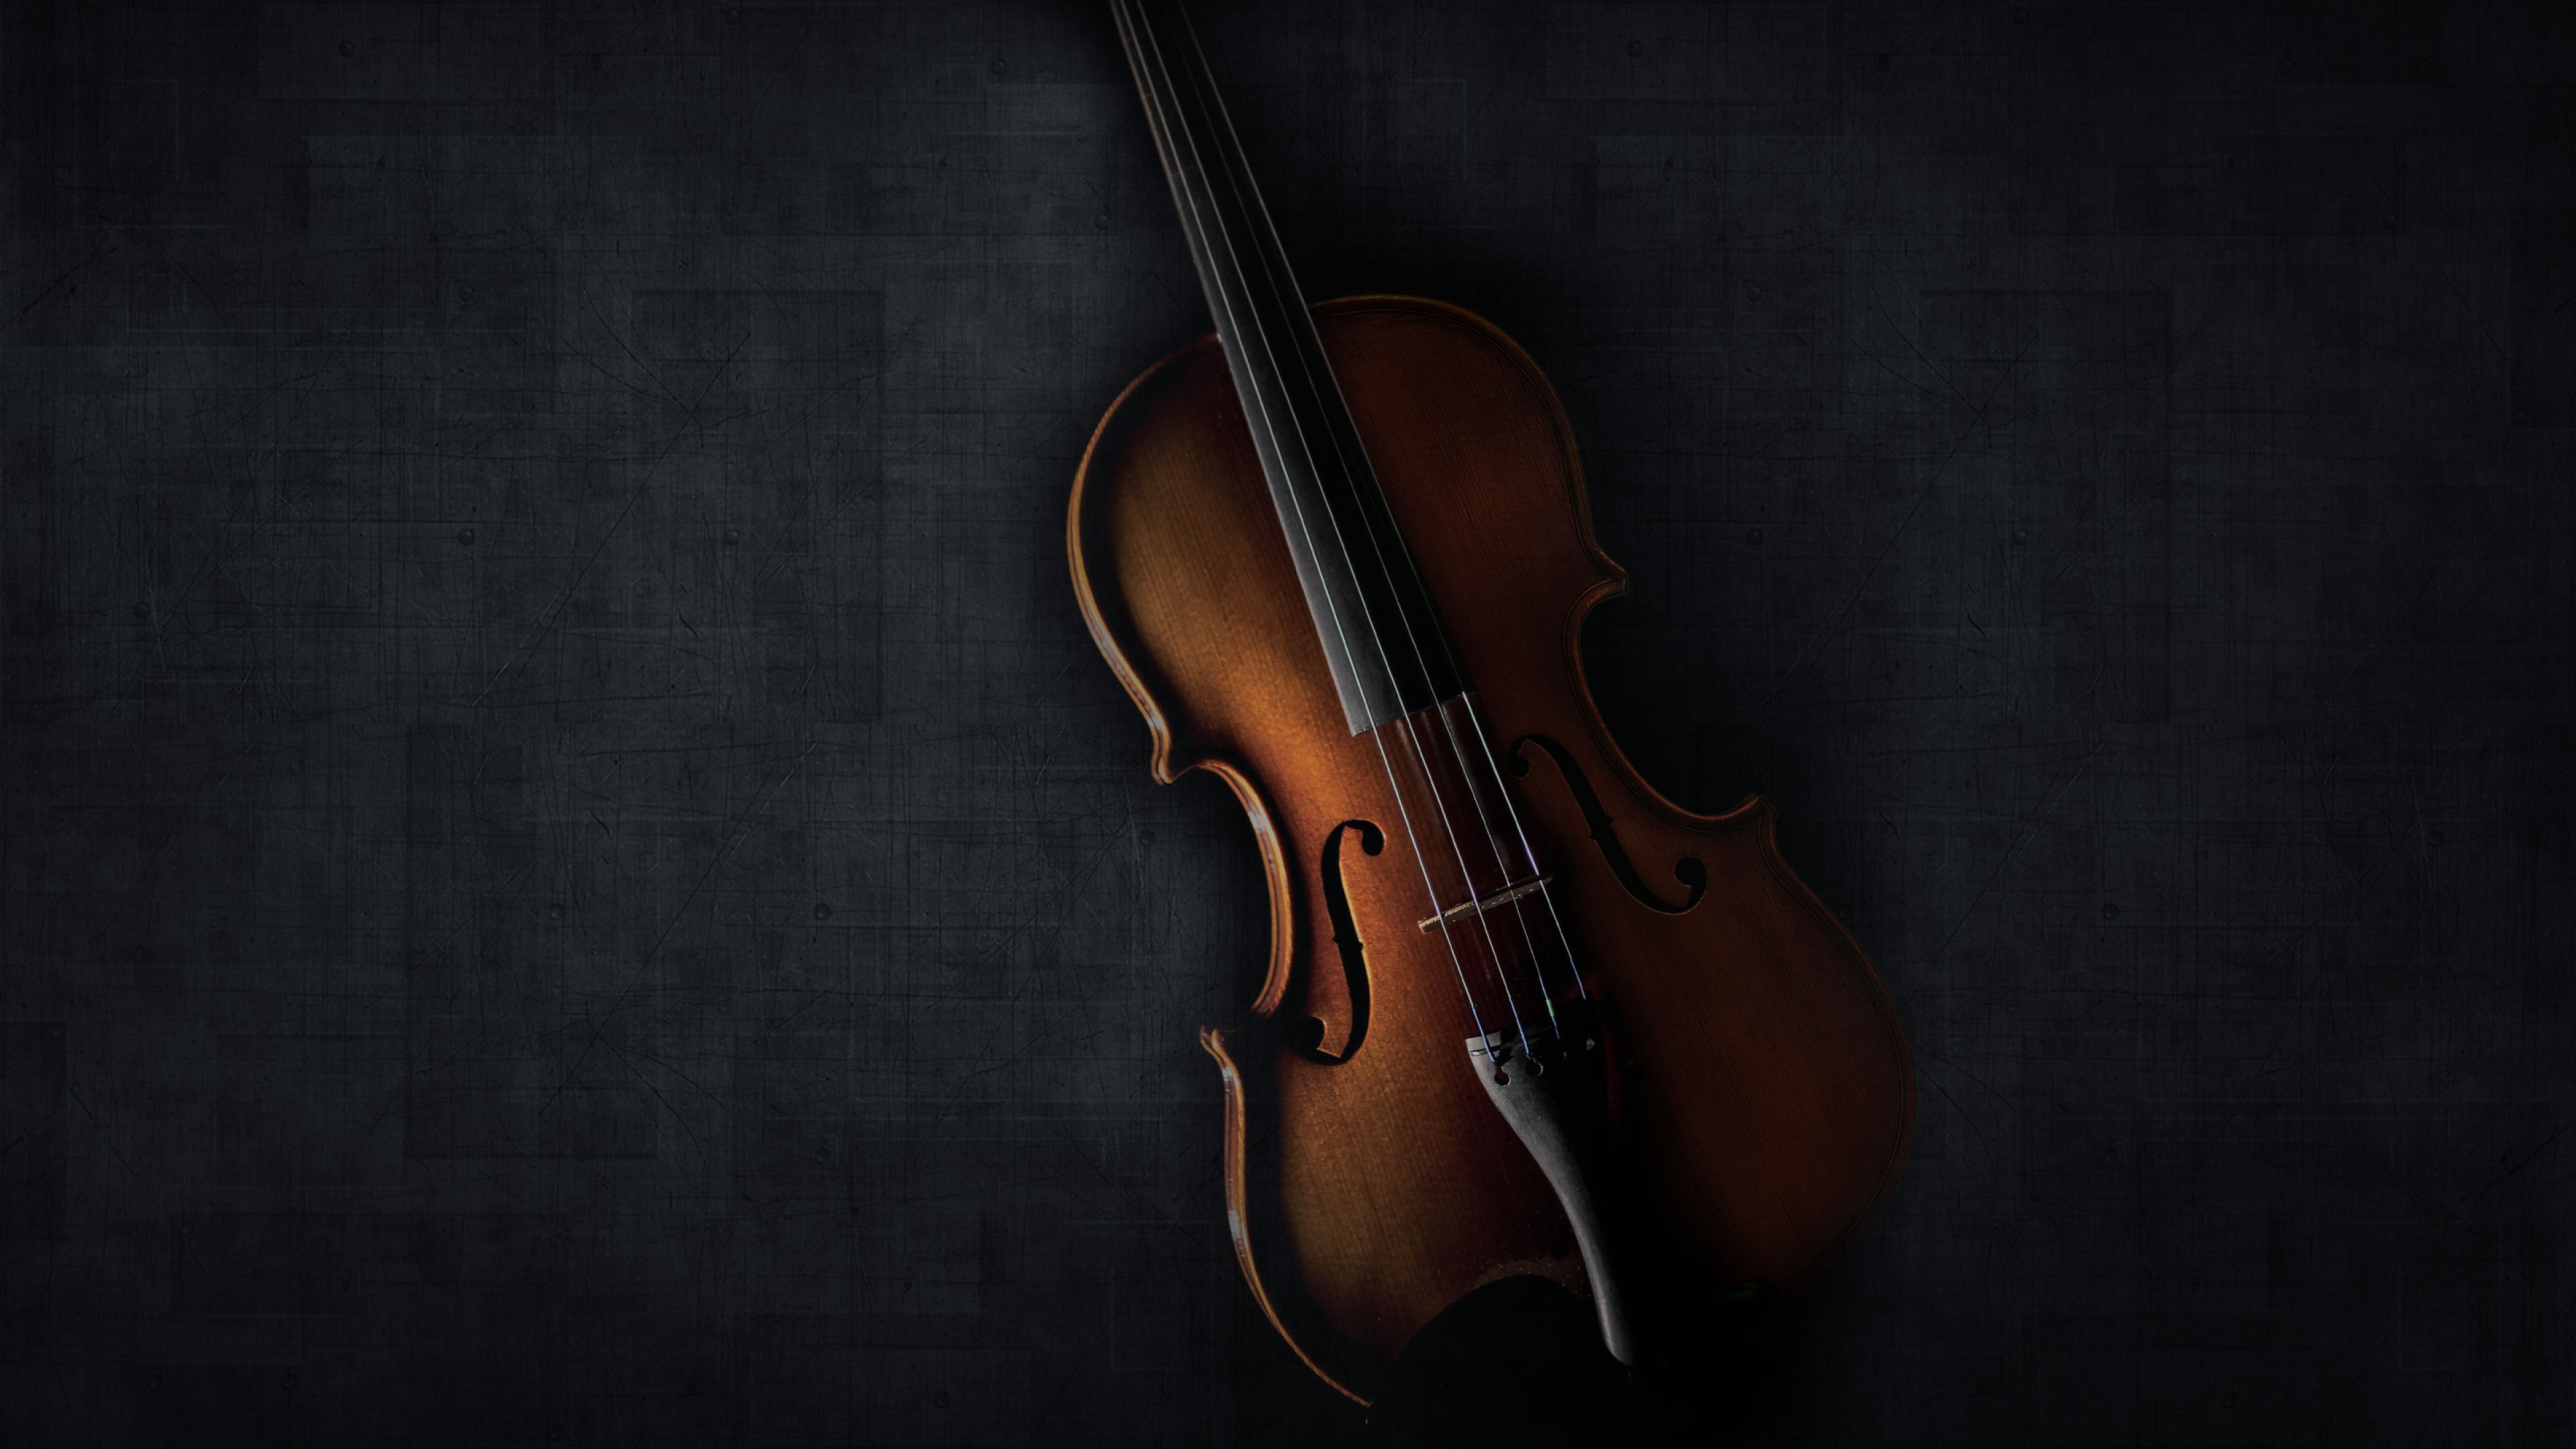 Violin instruments. Скрипка. Скрипка фон. Музыкальные инструменты на темном фоне. Виолончель.